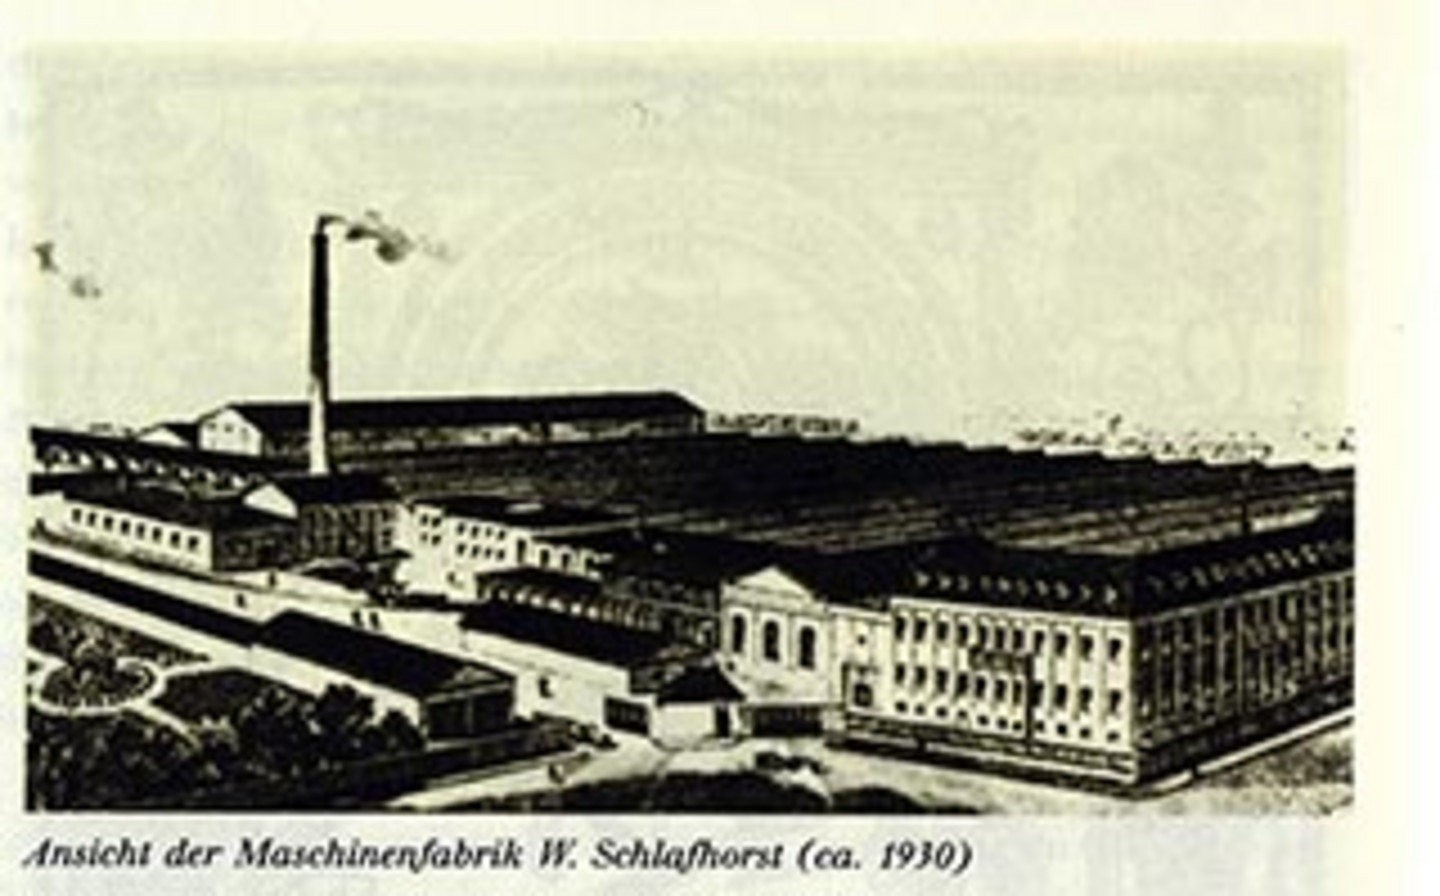 Ein Foto mit der Ansicht der Maschinenfabrik "W. Schlafhorst & Co." ; circa aus dem Jahr 1930.